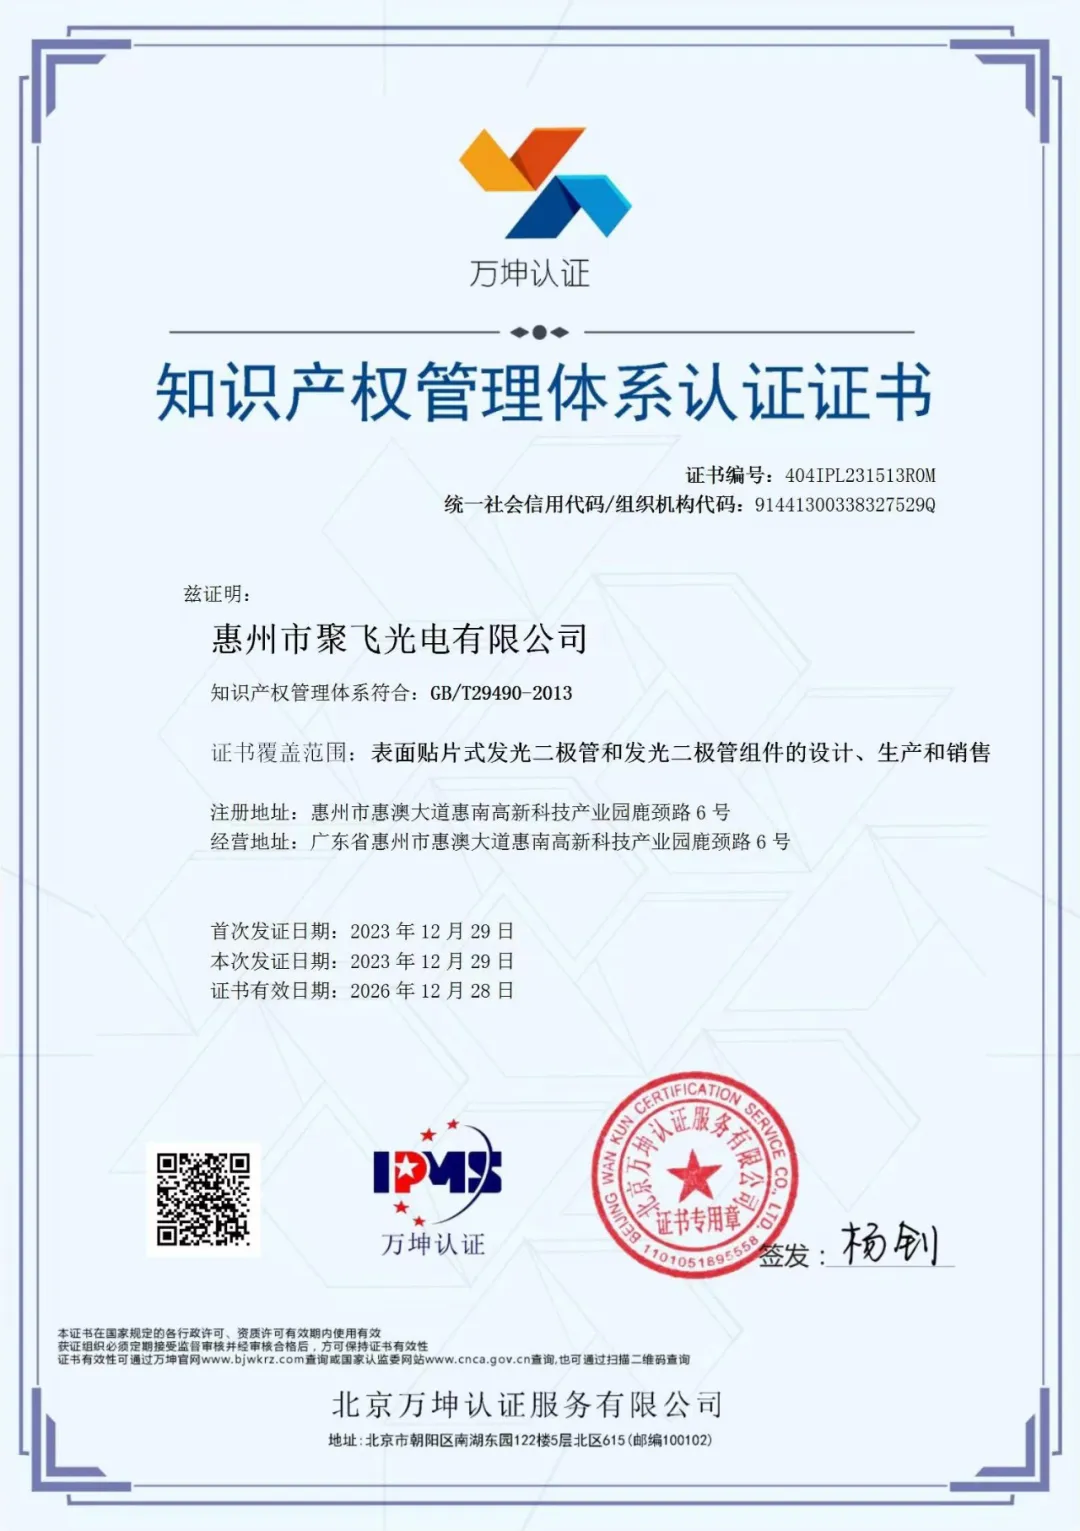 惠州太阳网集团8722总站光电通过企业知识产权管理规范认证